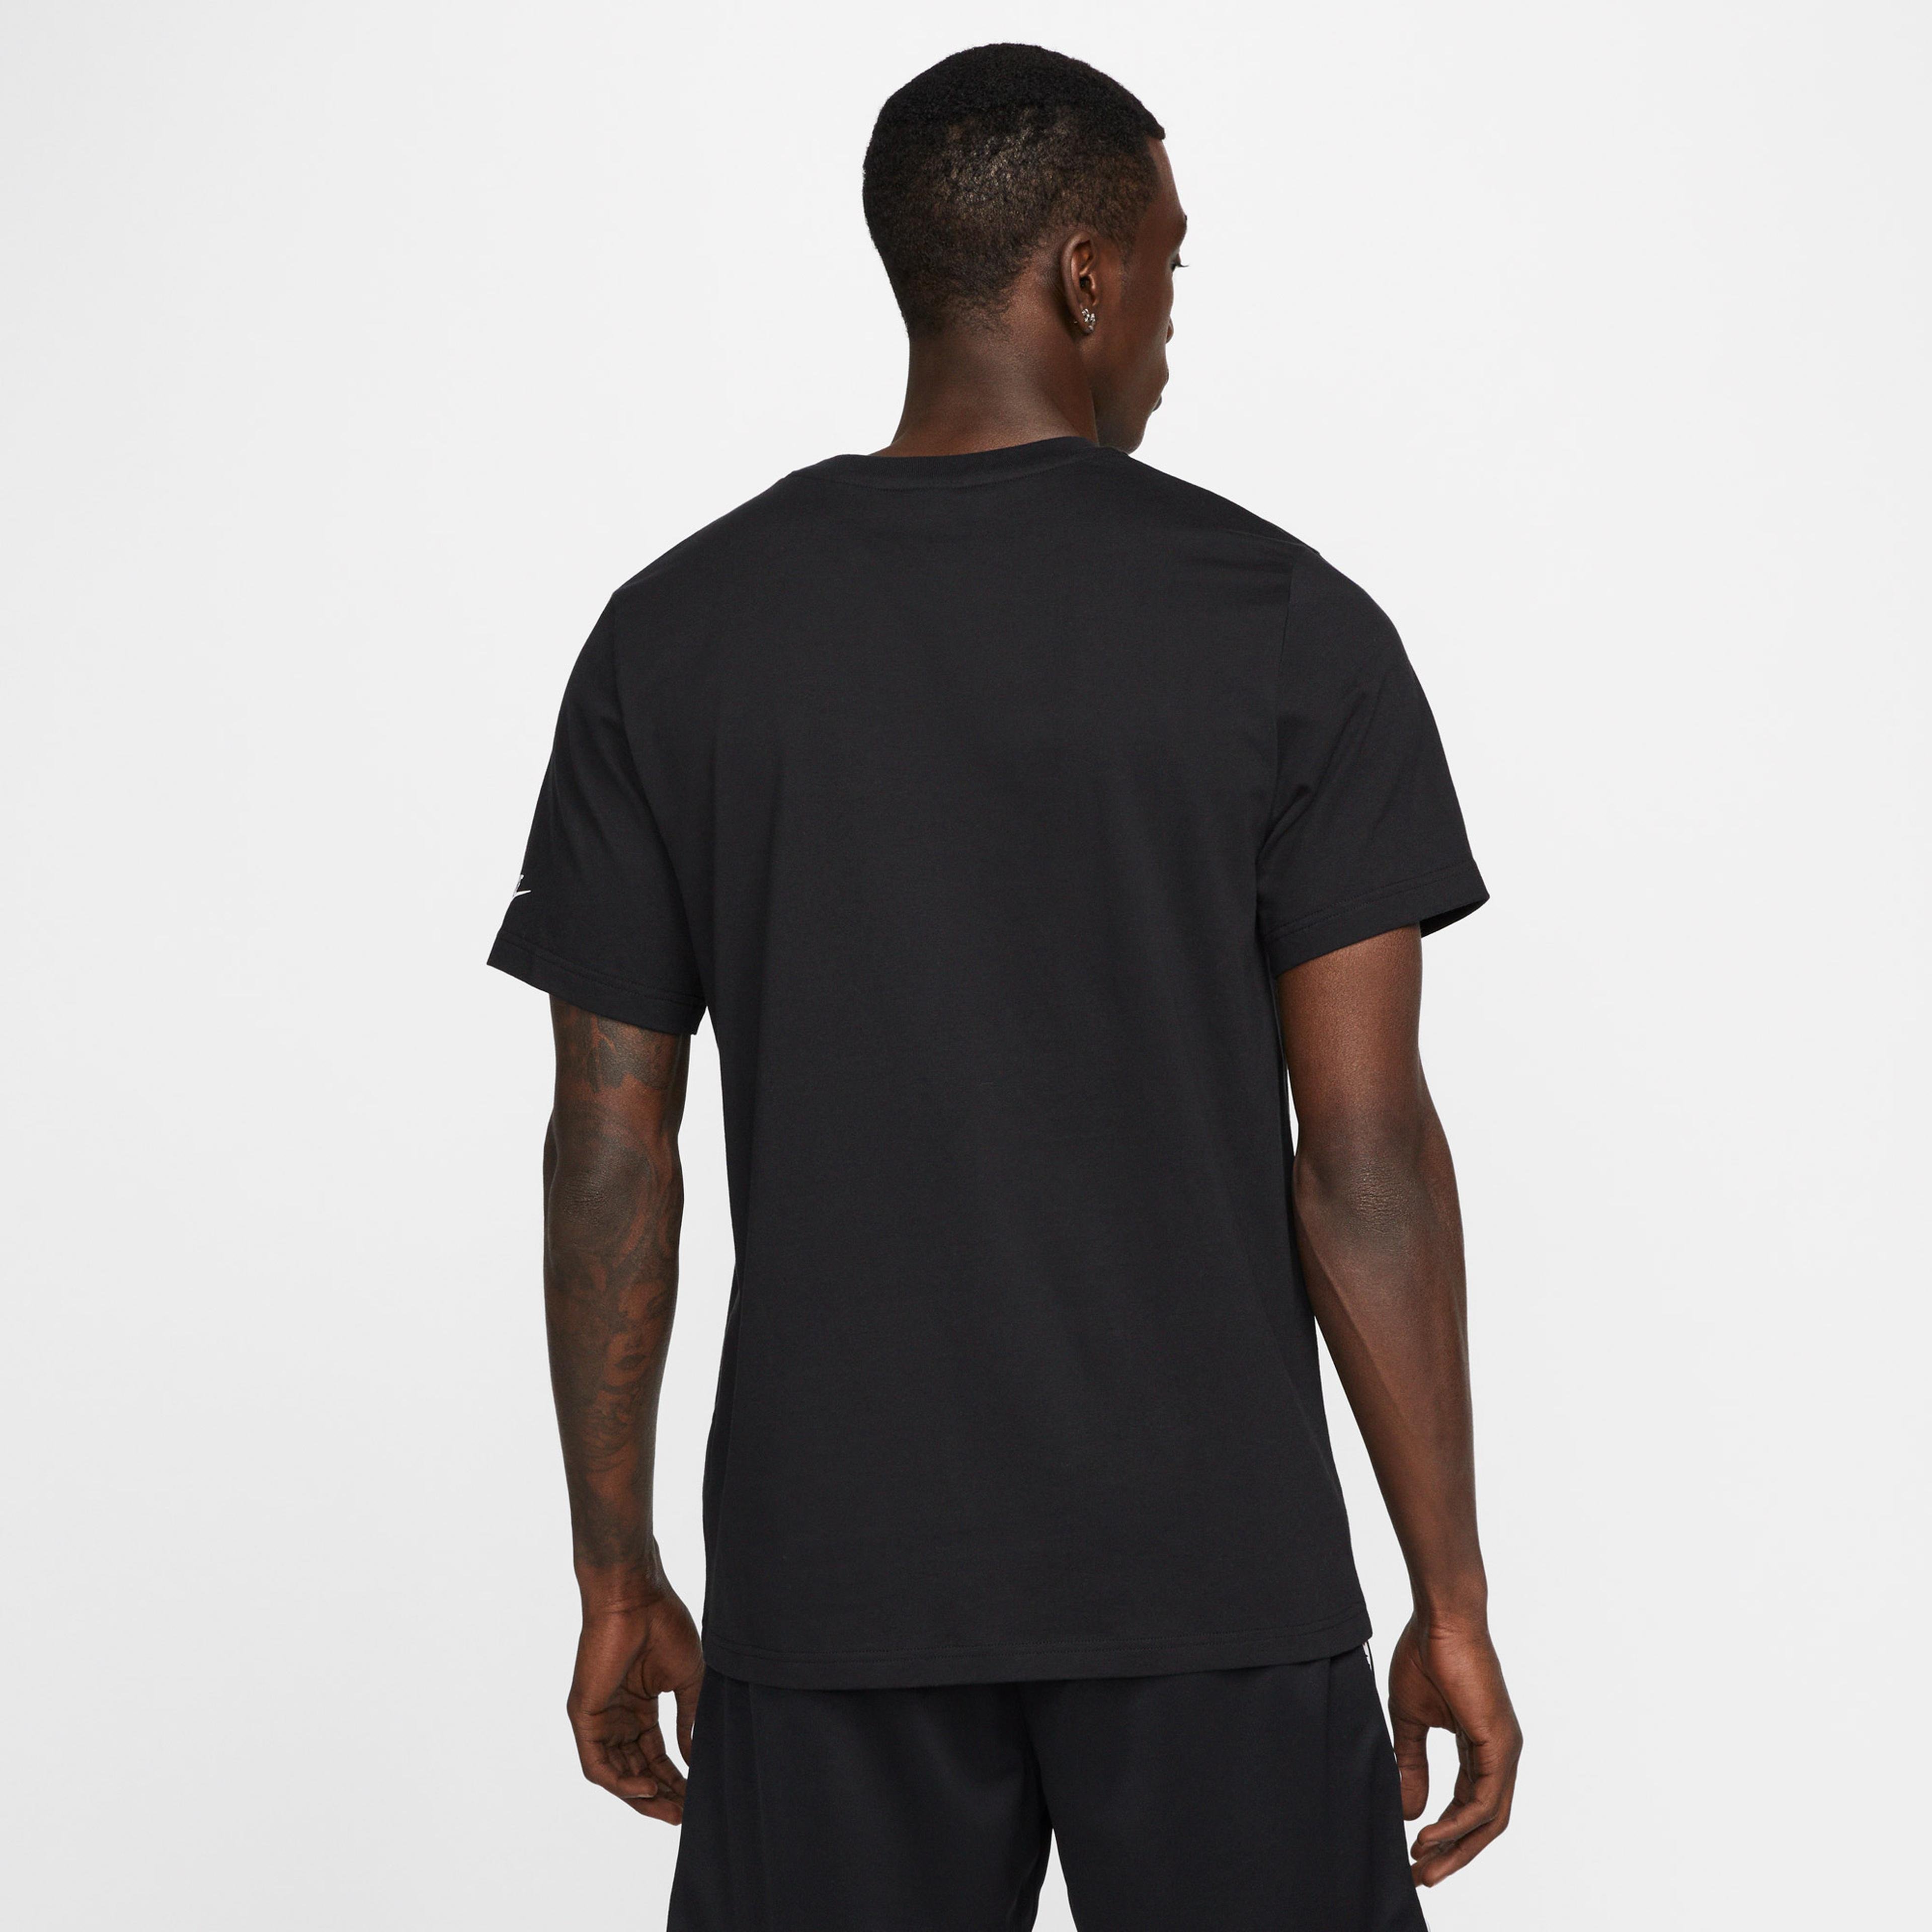 Nike Repeat Erkek Siyah T-Shirt